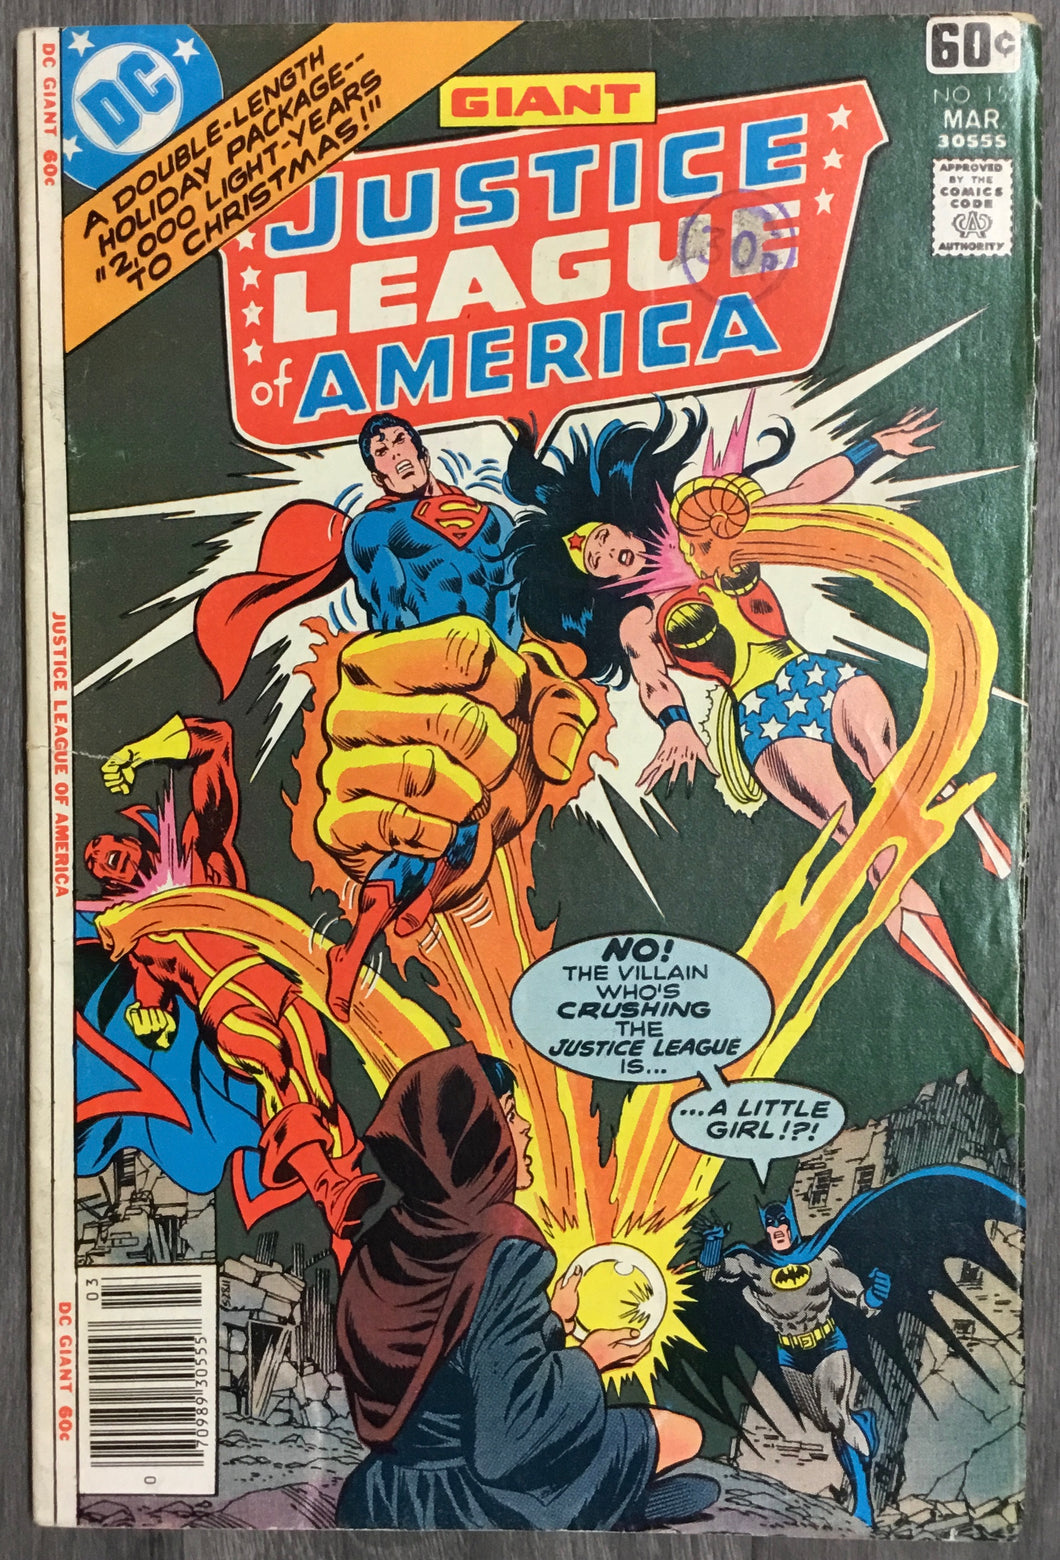 Justice League of America No. #152 1978 DC Comics